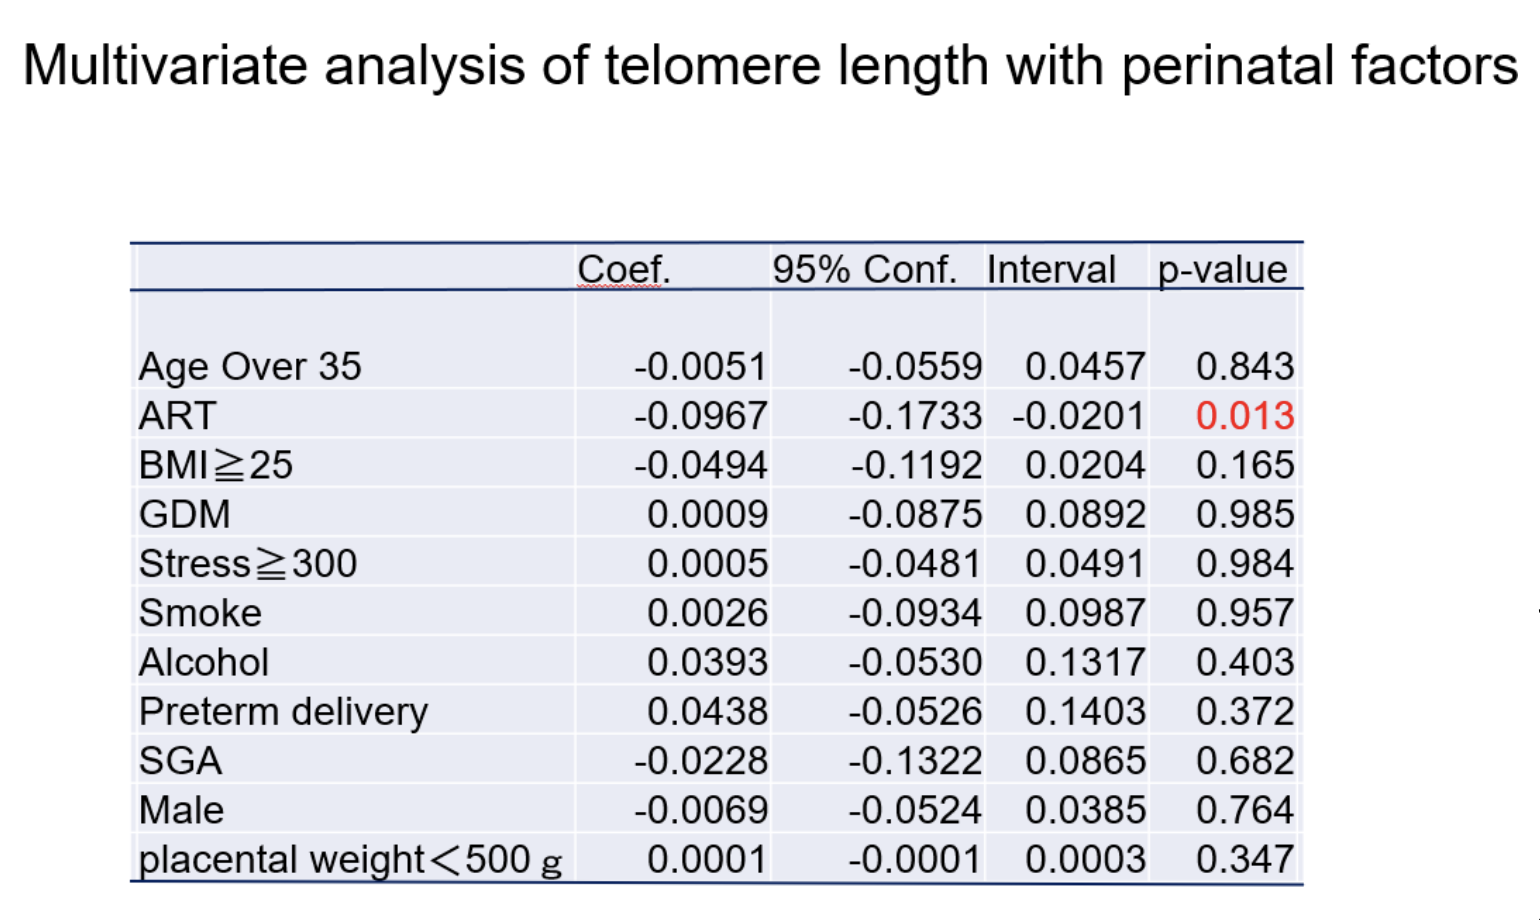 図2　テロメア短縮と各種周産期因子との関連性を見た多変量解析結果